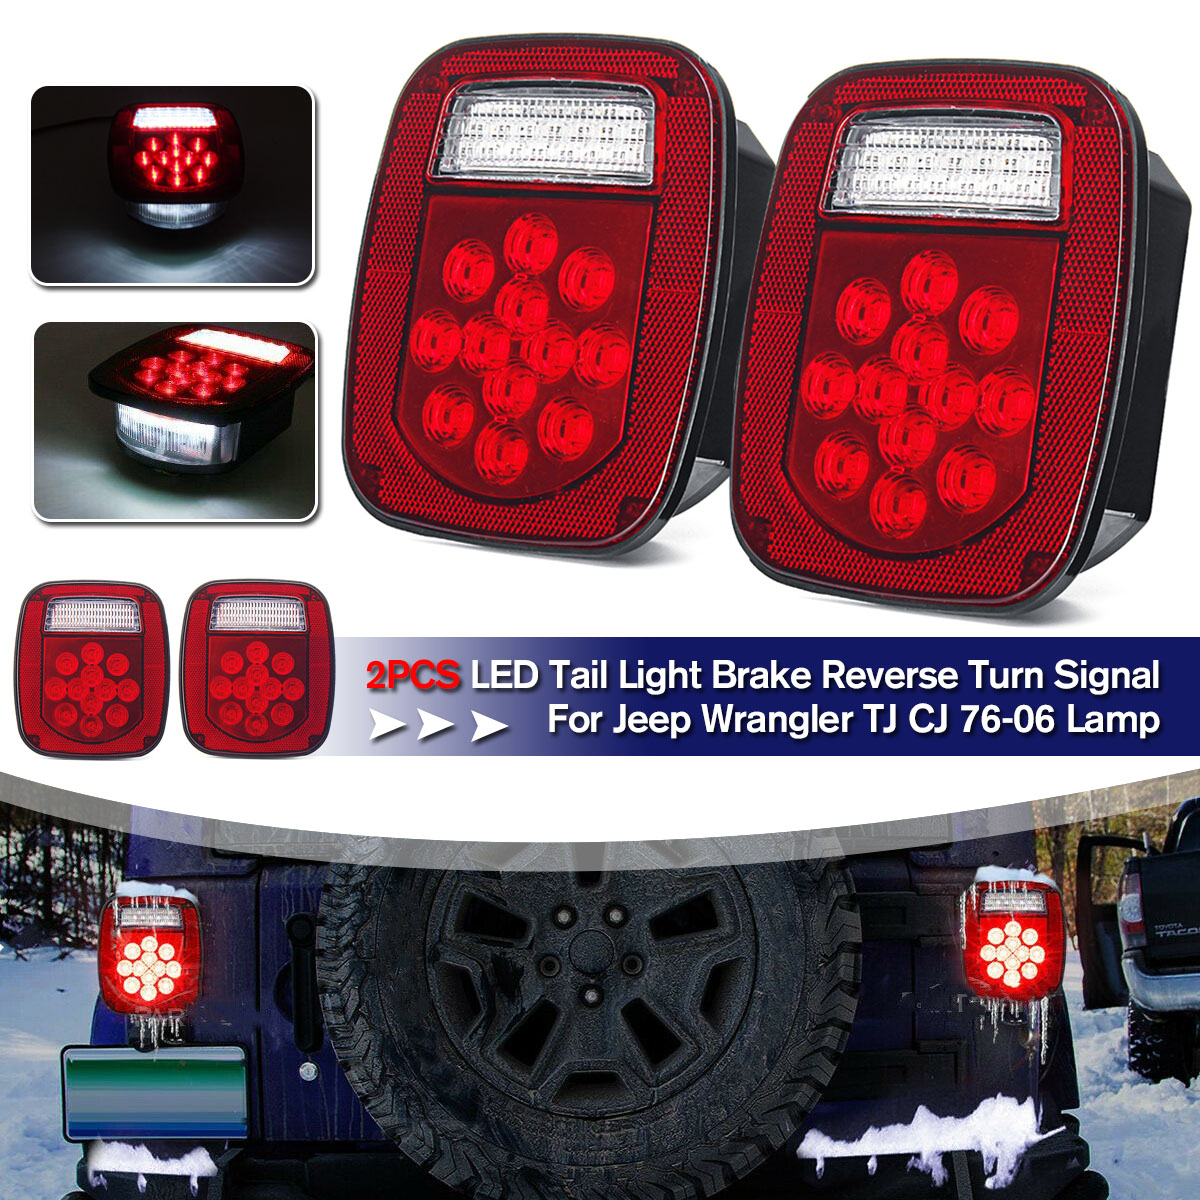 Mua 2PCS LED Tail Light Brake Reverse Turn Signal For Jeep Wrangler TJ CJ  76-06 Lamp